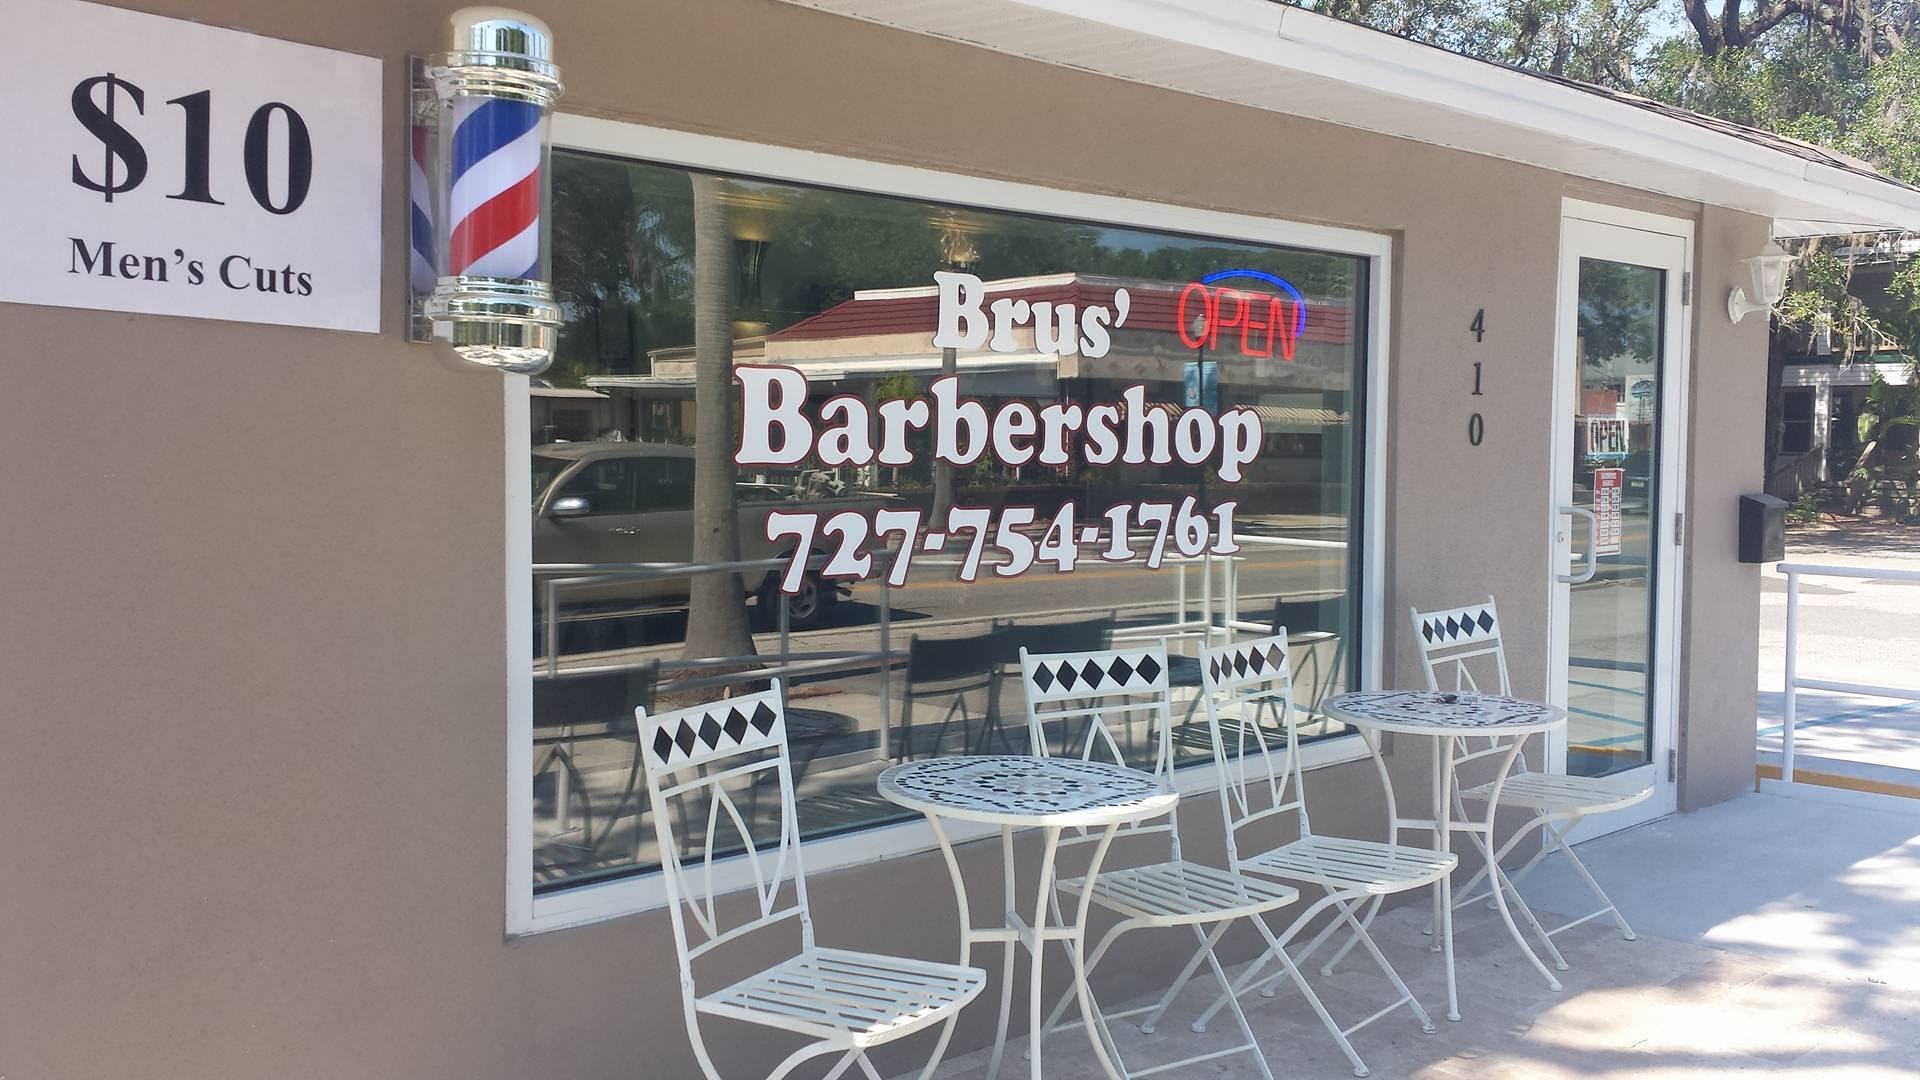 Brus' Barbershop